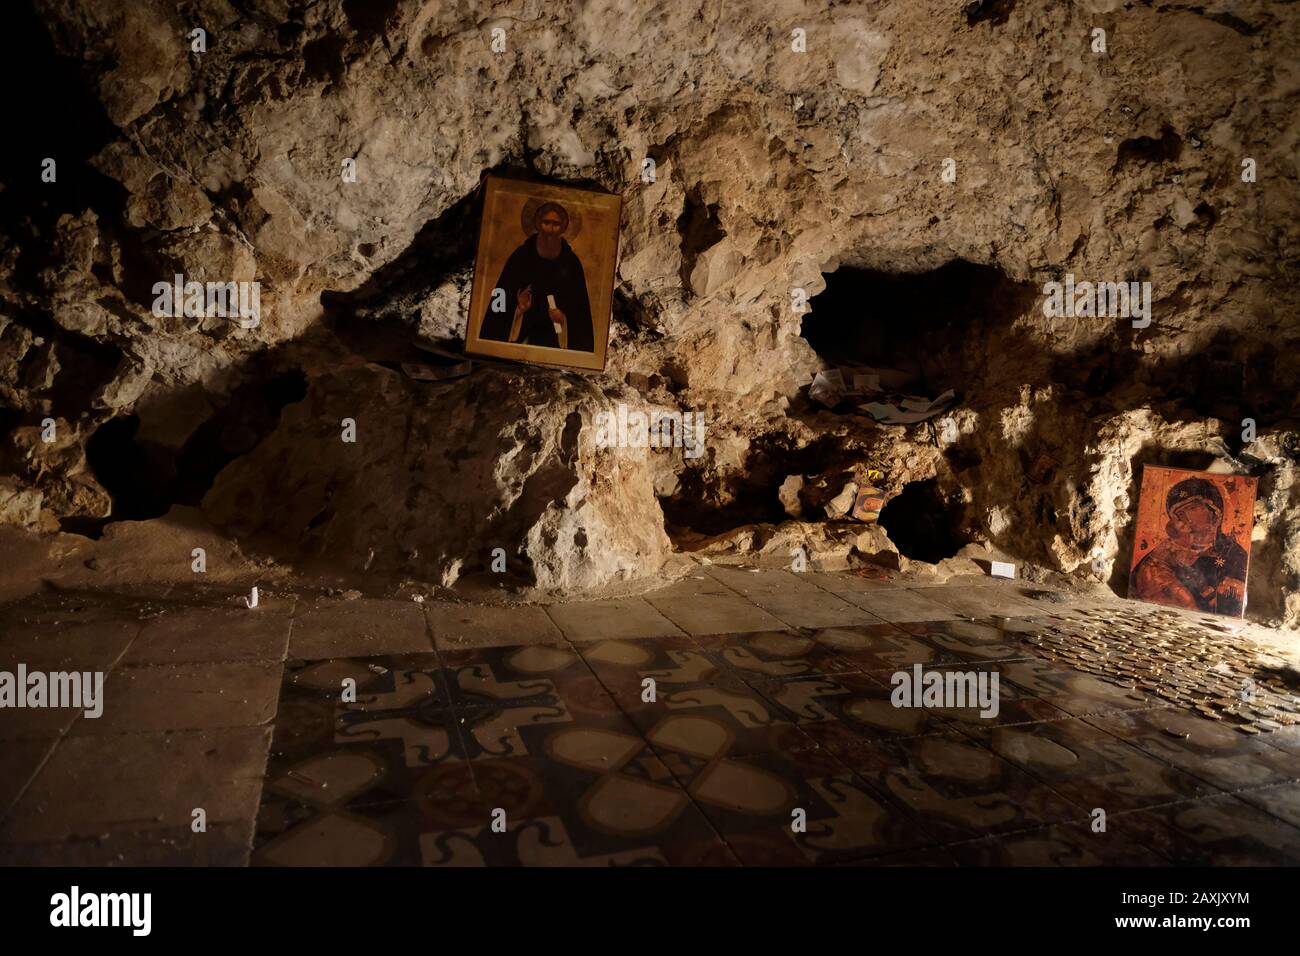 Religiöse Ikonen in einer Höhle im Inneren des griechischen orthodoxen Heiligen Klosters von Sarantarion Mountain oder Die Versuchung, die an den hängen des Mount of Temptation gebaut wurde, die sich entlang einer Klippe mit Blick auf die Stadt Jericho in den palästinensischen Gebieten in der Nähe des Jordan im Westjordanland, Israel, befindet Stockfoto